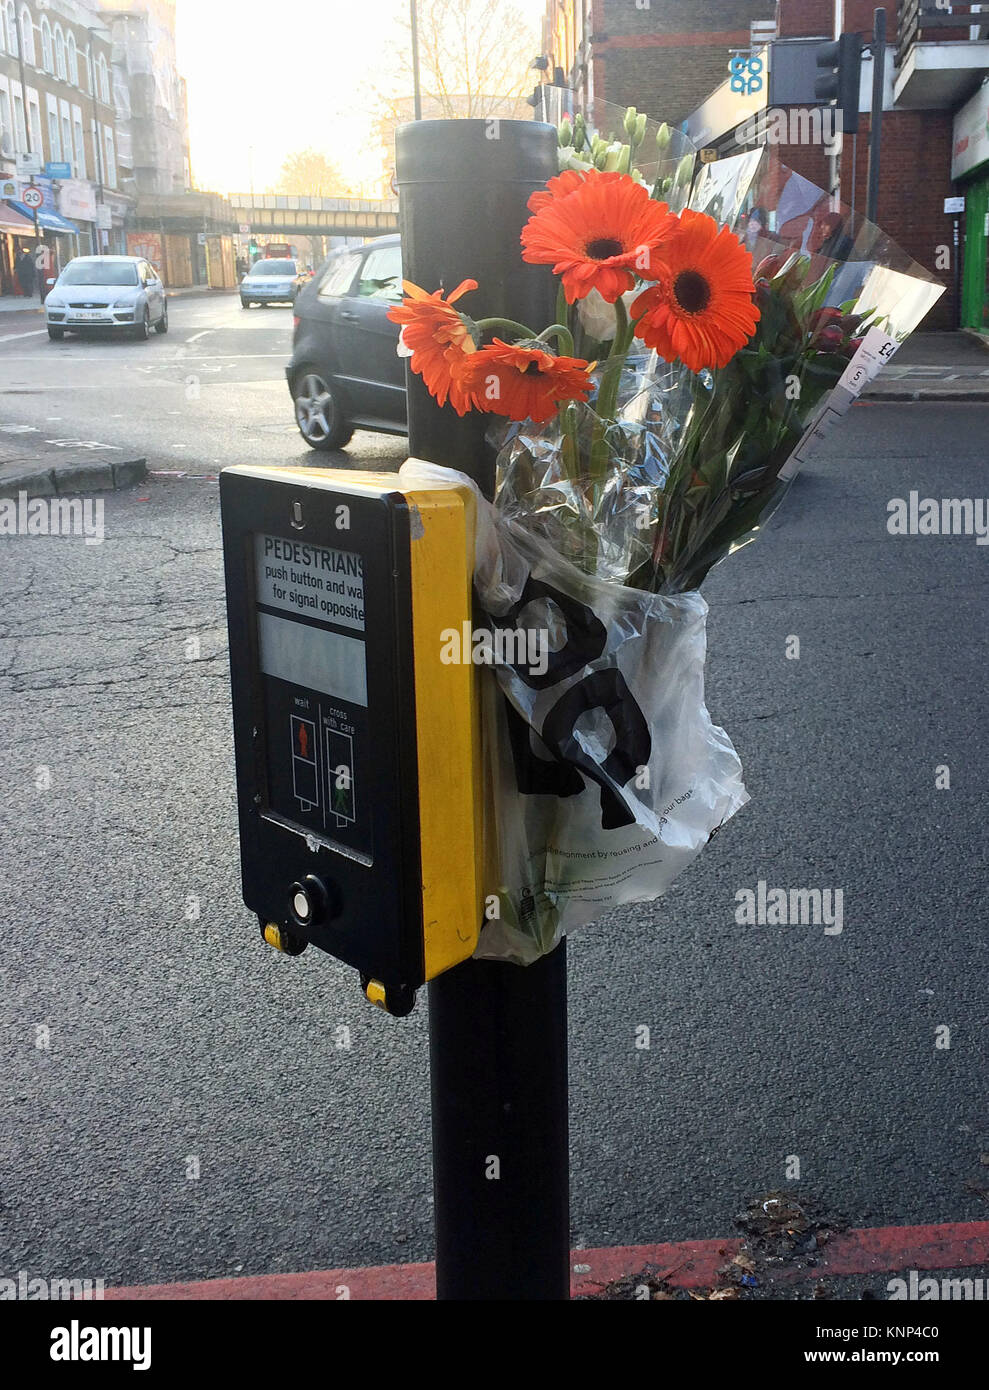 Des fleurs près de la scène de Tulse Hill, Londres, où une femme meurt après avoir été frappé par deux camions et deux voitures dans un cas présumé de plusieurs délits de fuite, a annoncé la police. Banque D'Images